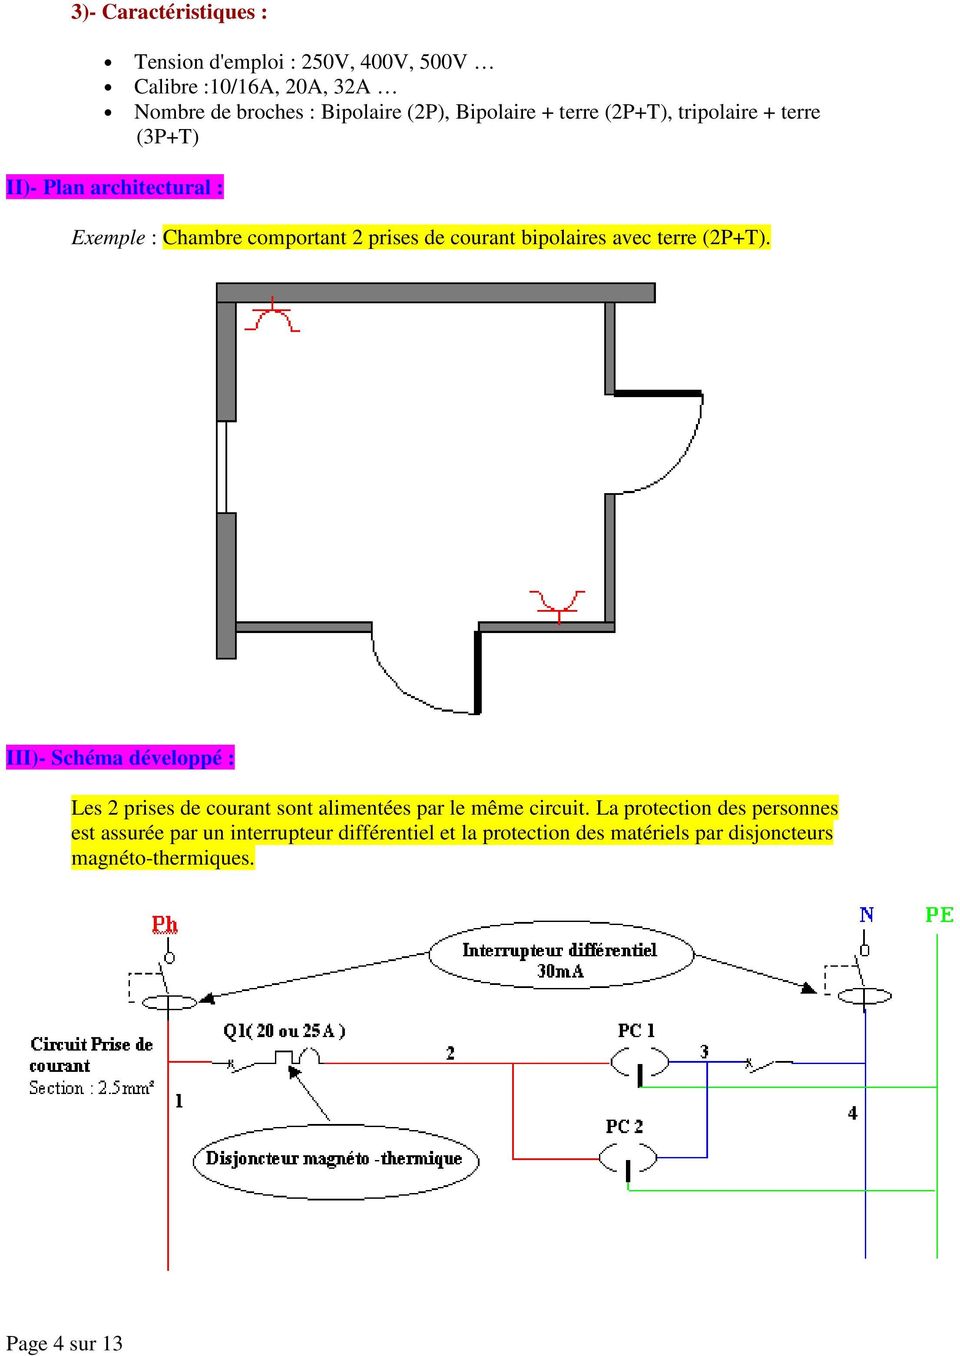 bipolaires avec terre (2P+T). III)- Schéma développé : Les 2 prises de courant sont alimentées par le même circuit.